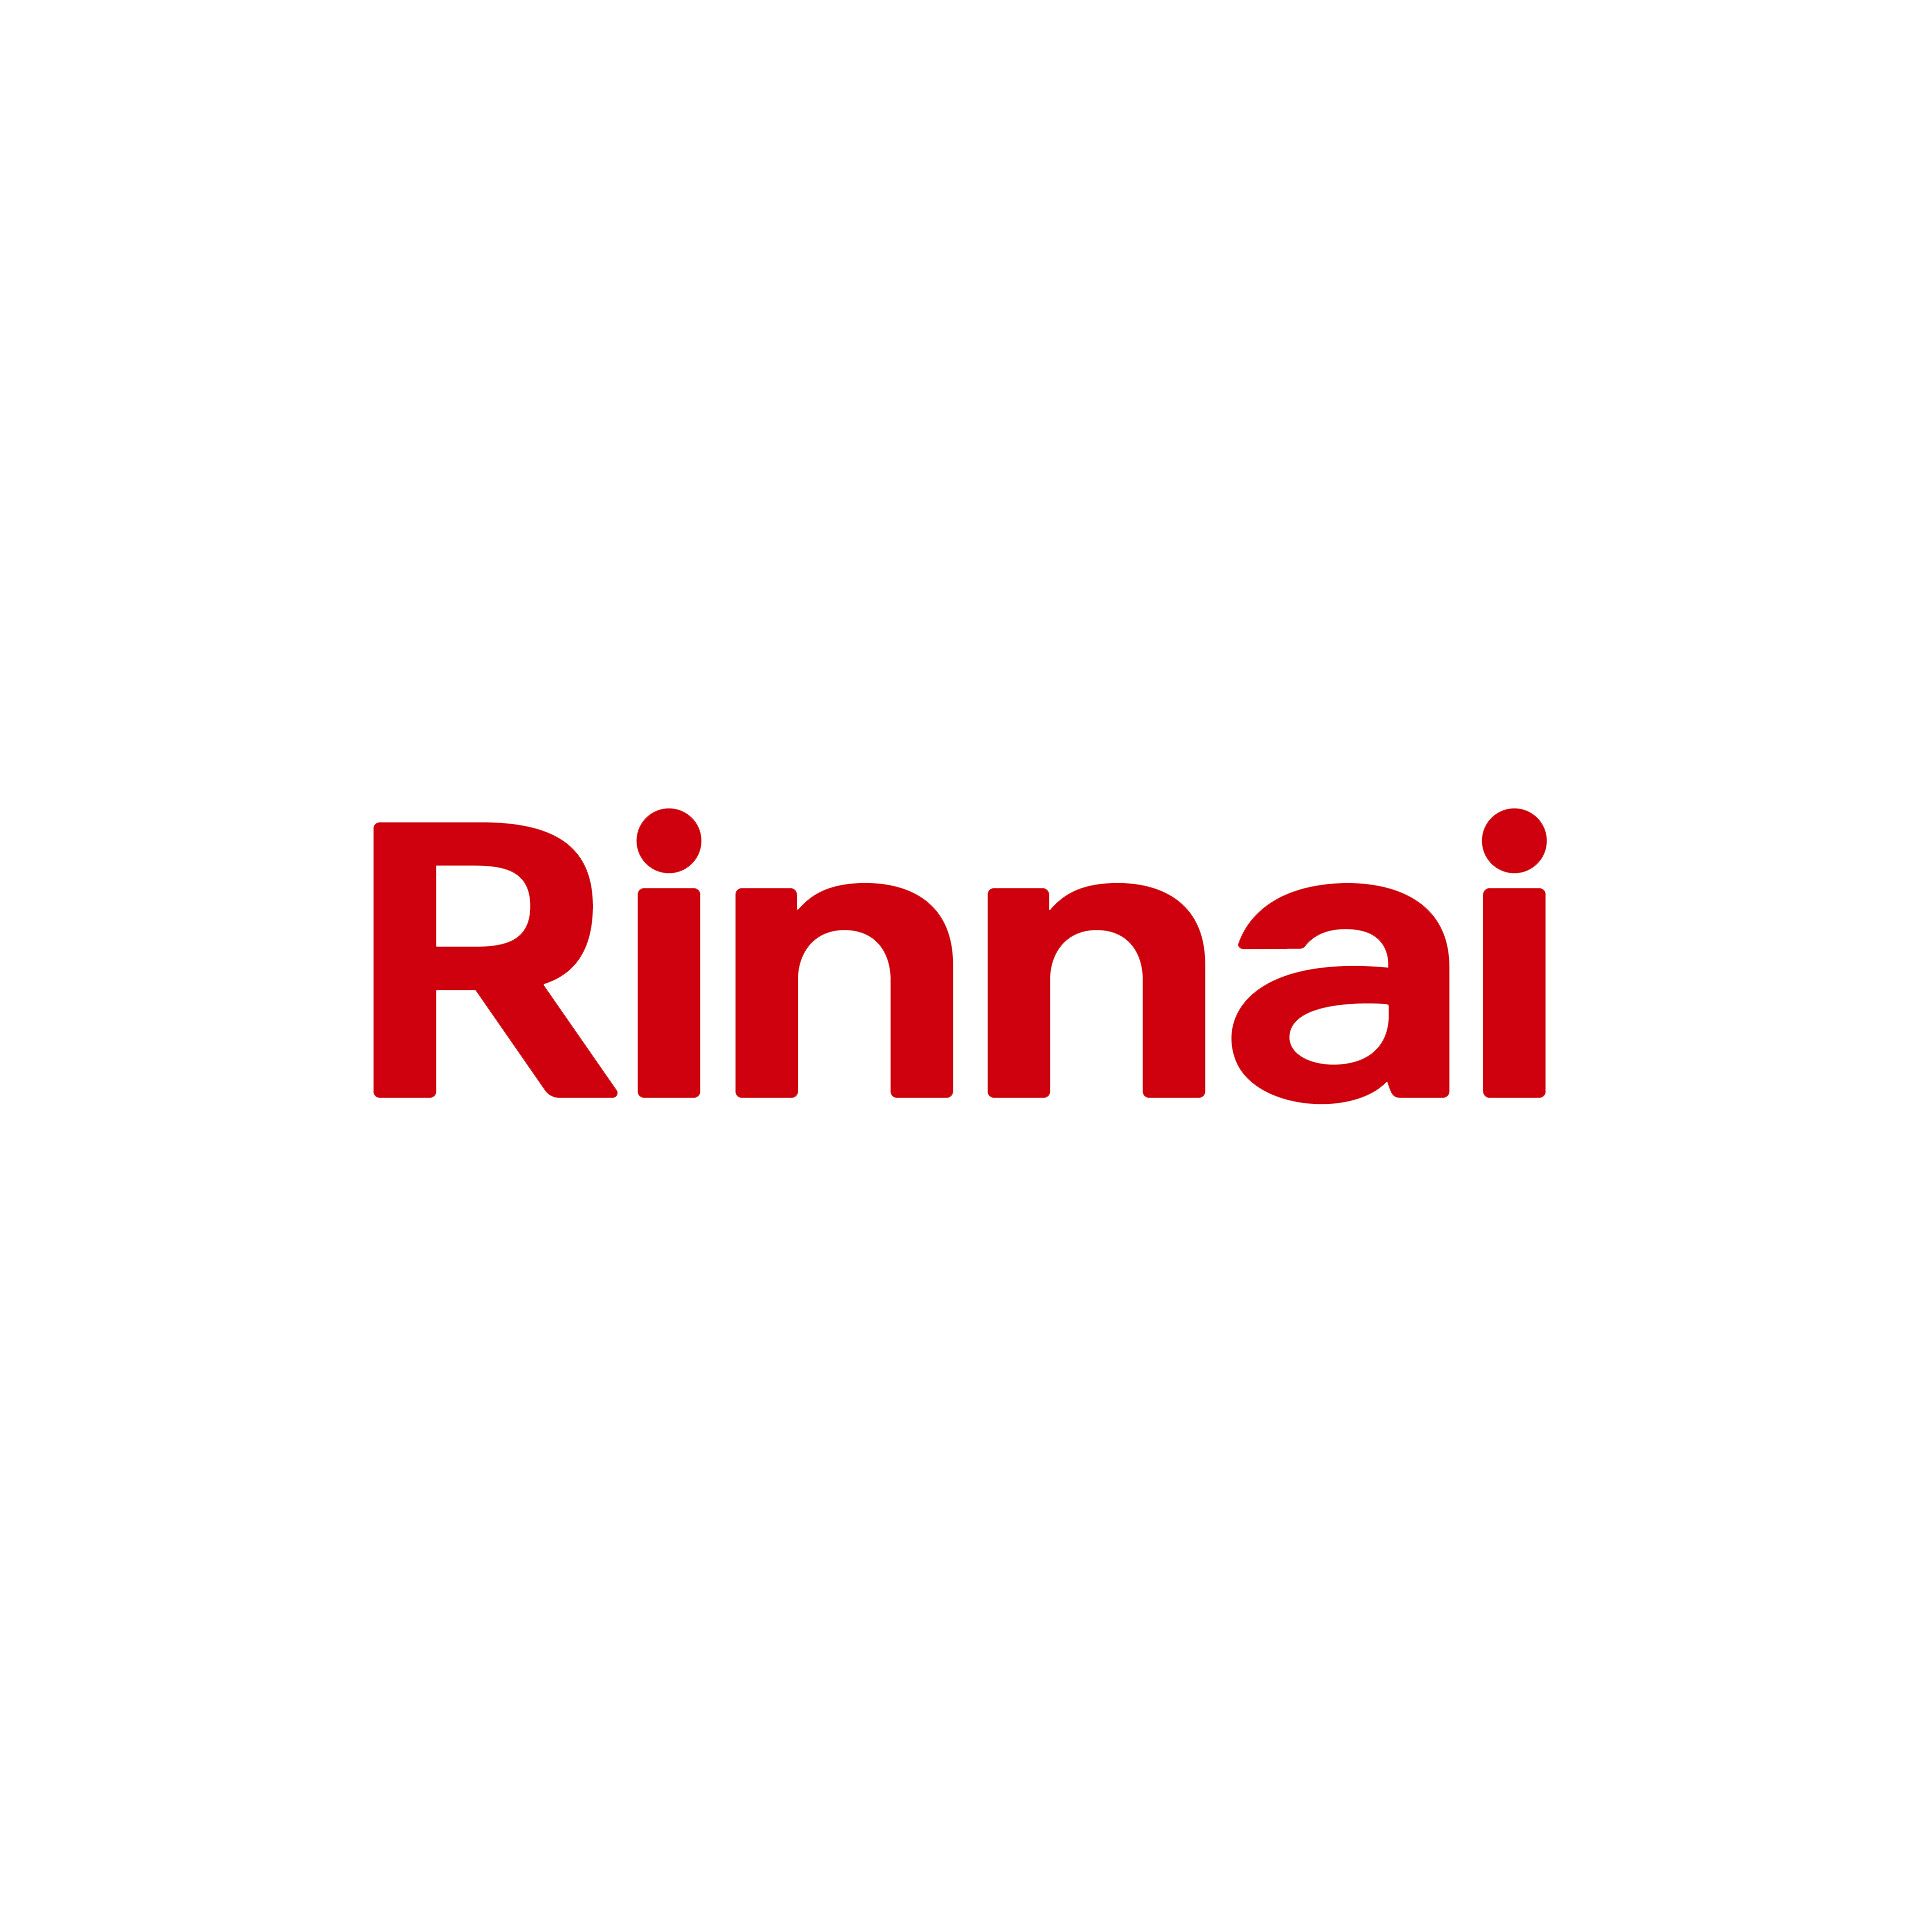 Rinnai logo on white background